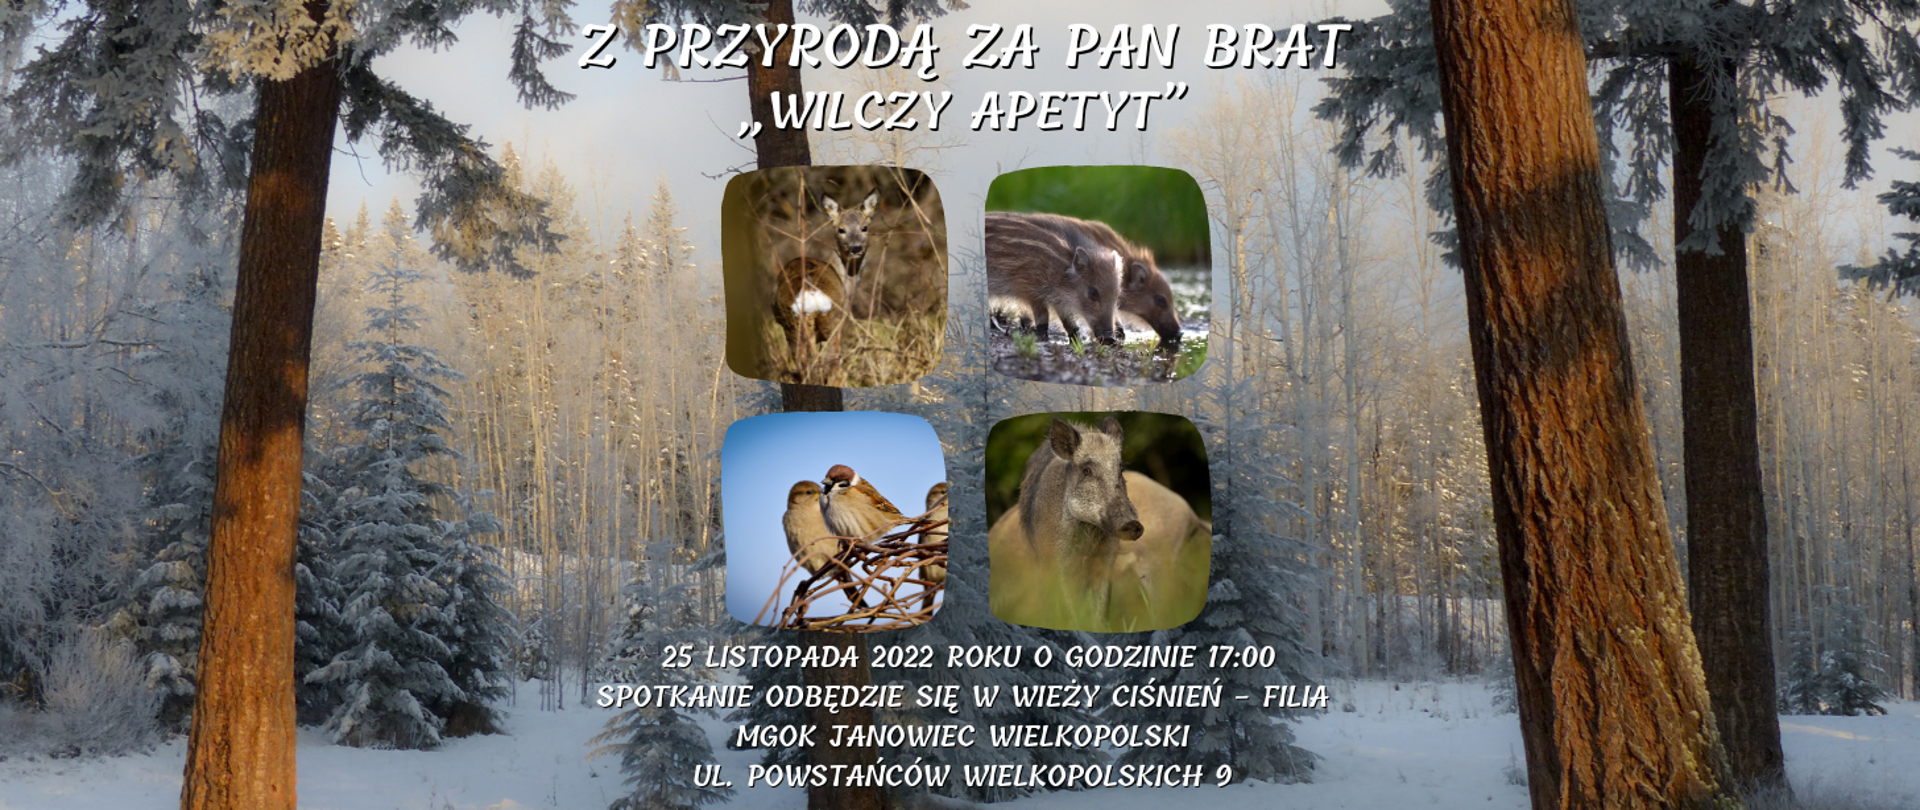 banner wydarzenia Z PRZYRODĄ ZA PAN BRAT - „WILCZY APETYT” które odbędzie się dnia 25 listopada 2022 roku o godzinie 17:00 w Wieży Ciśnień w Janowcu Wielkopolskim.